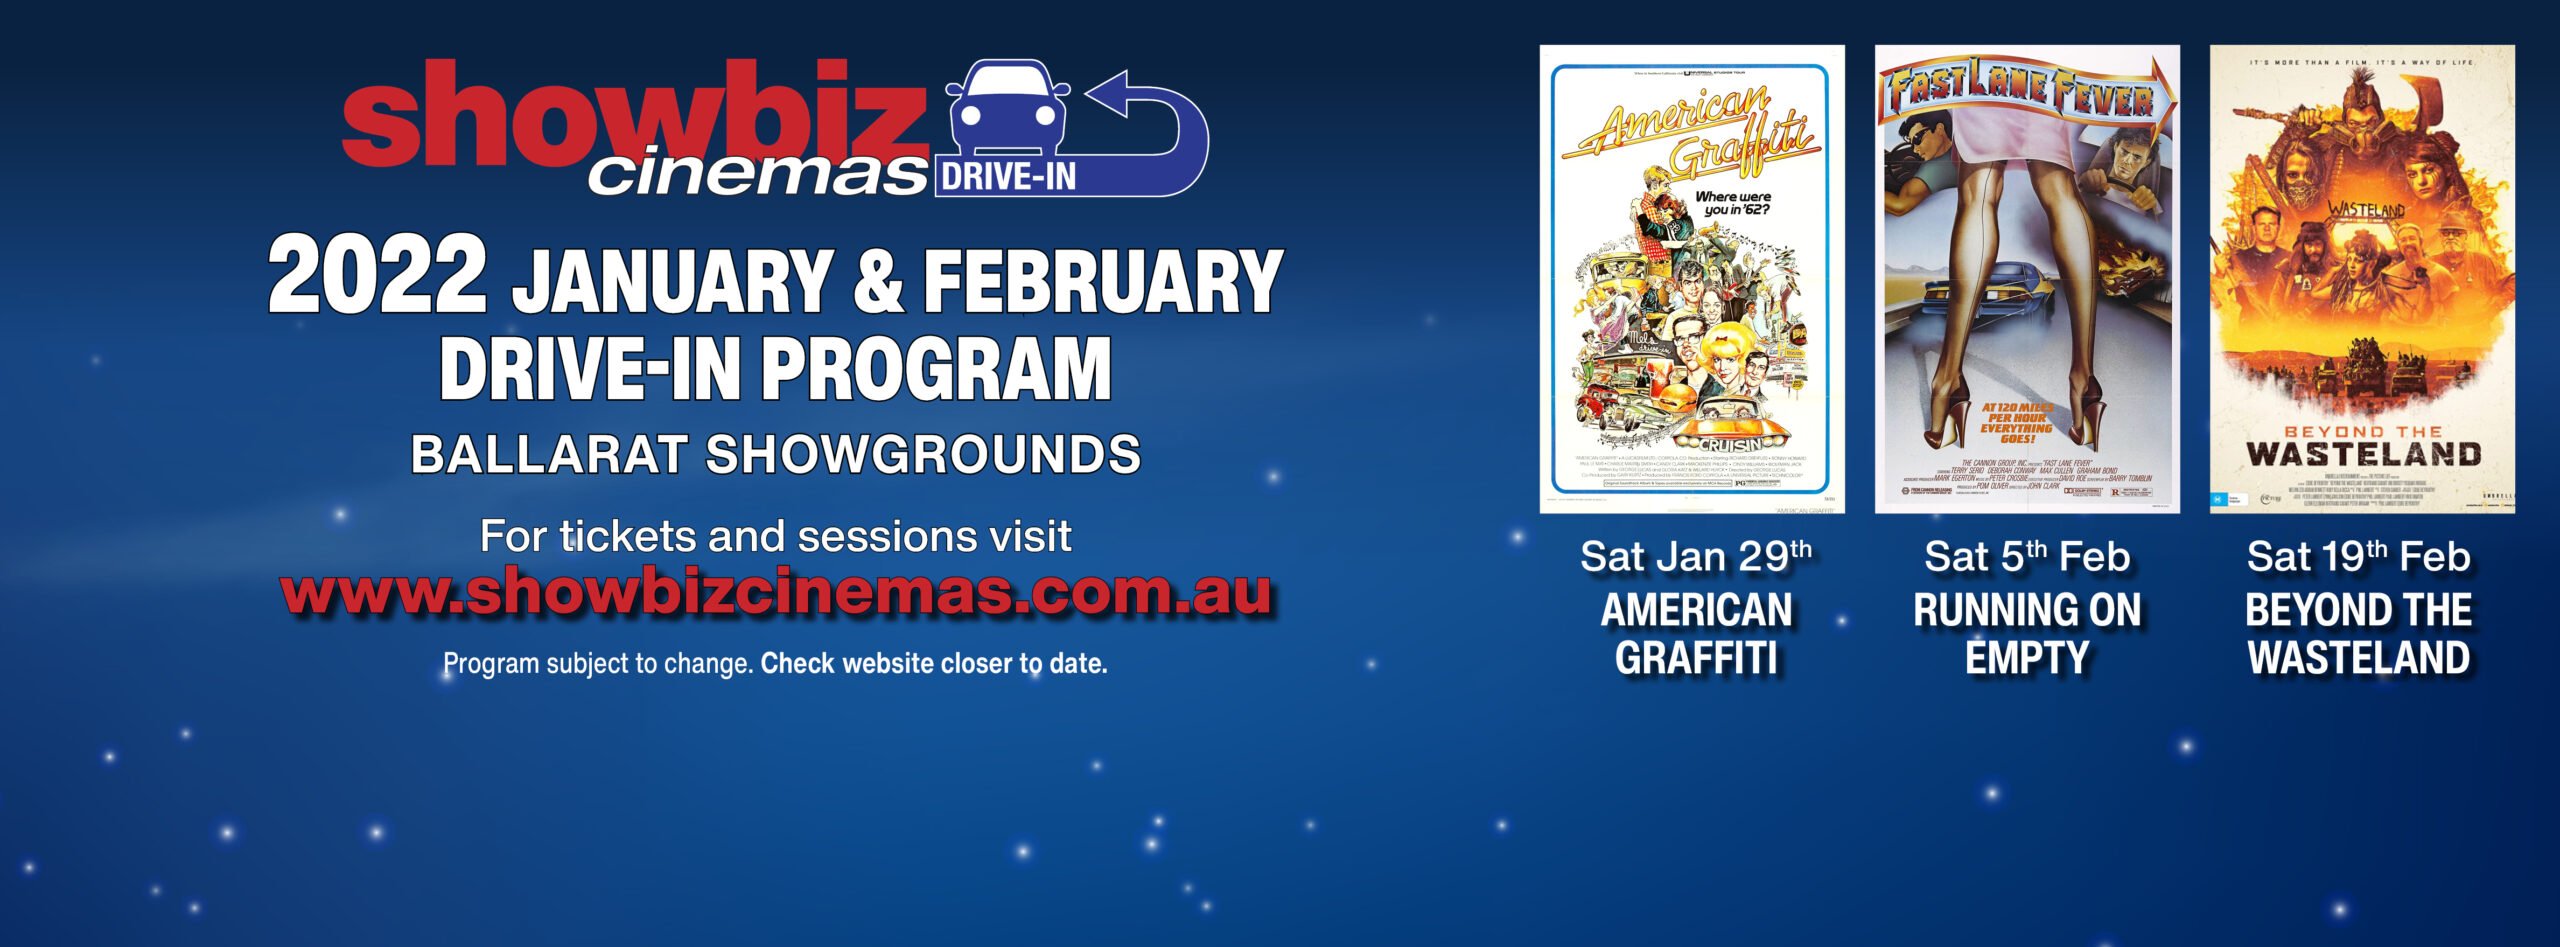 Showbiz Cinemas Ballarat Drive-In Jan-Feb 2022 Carousel